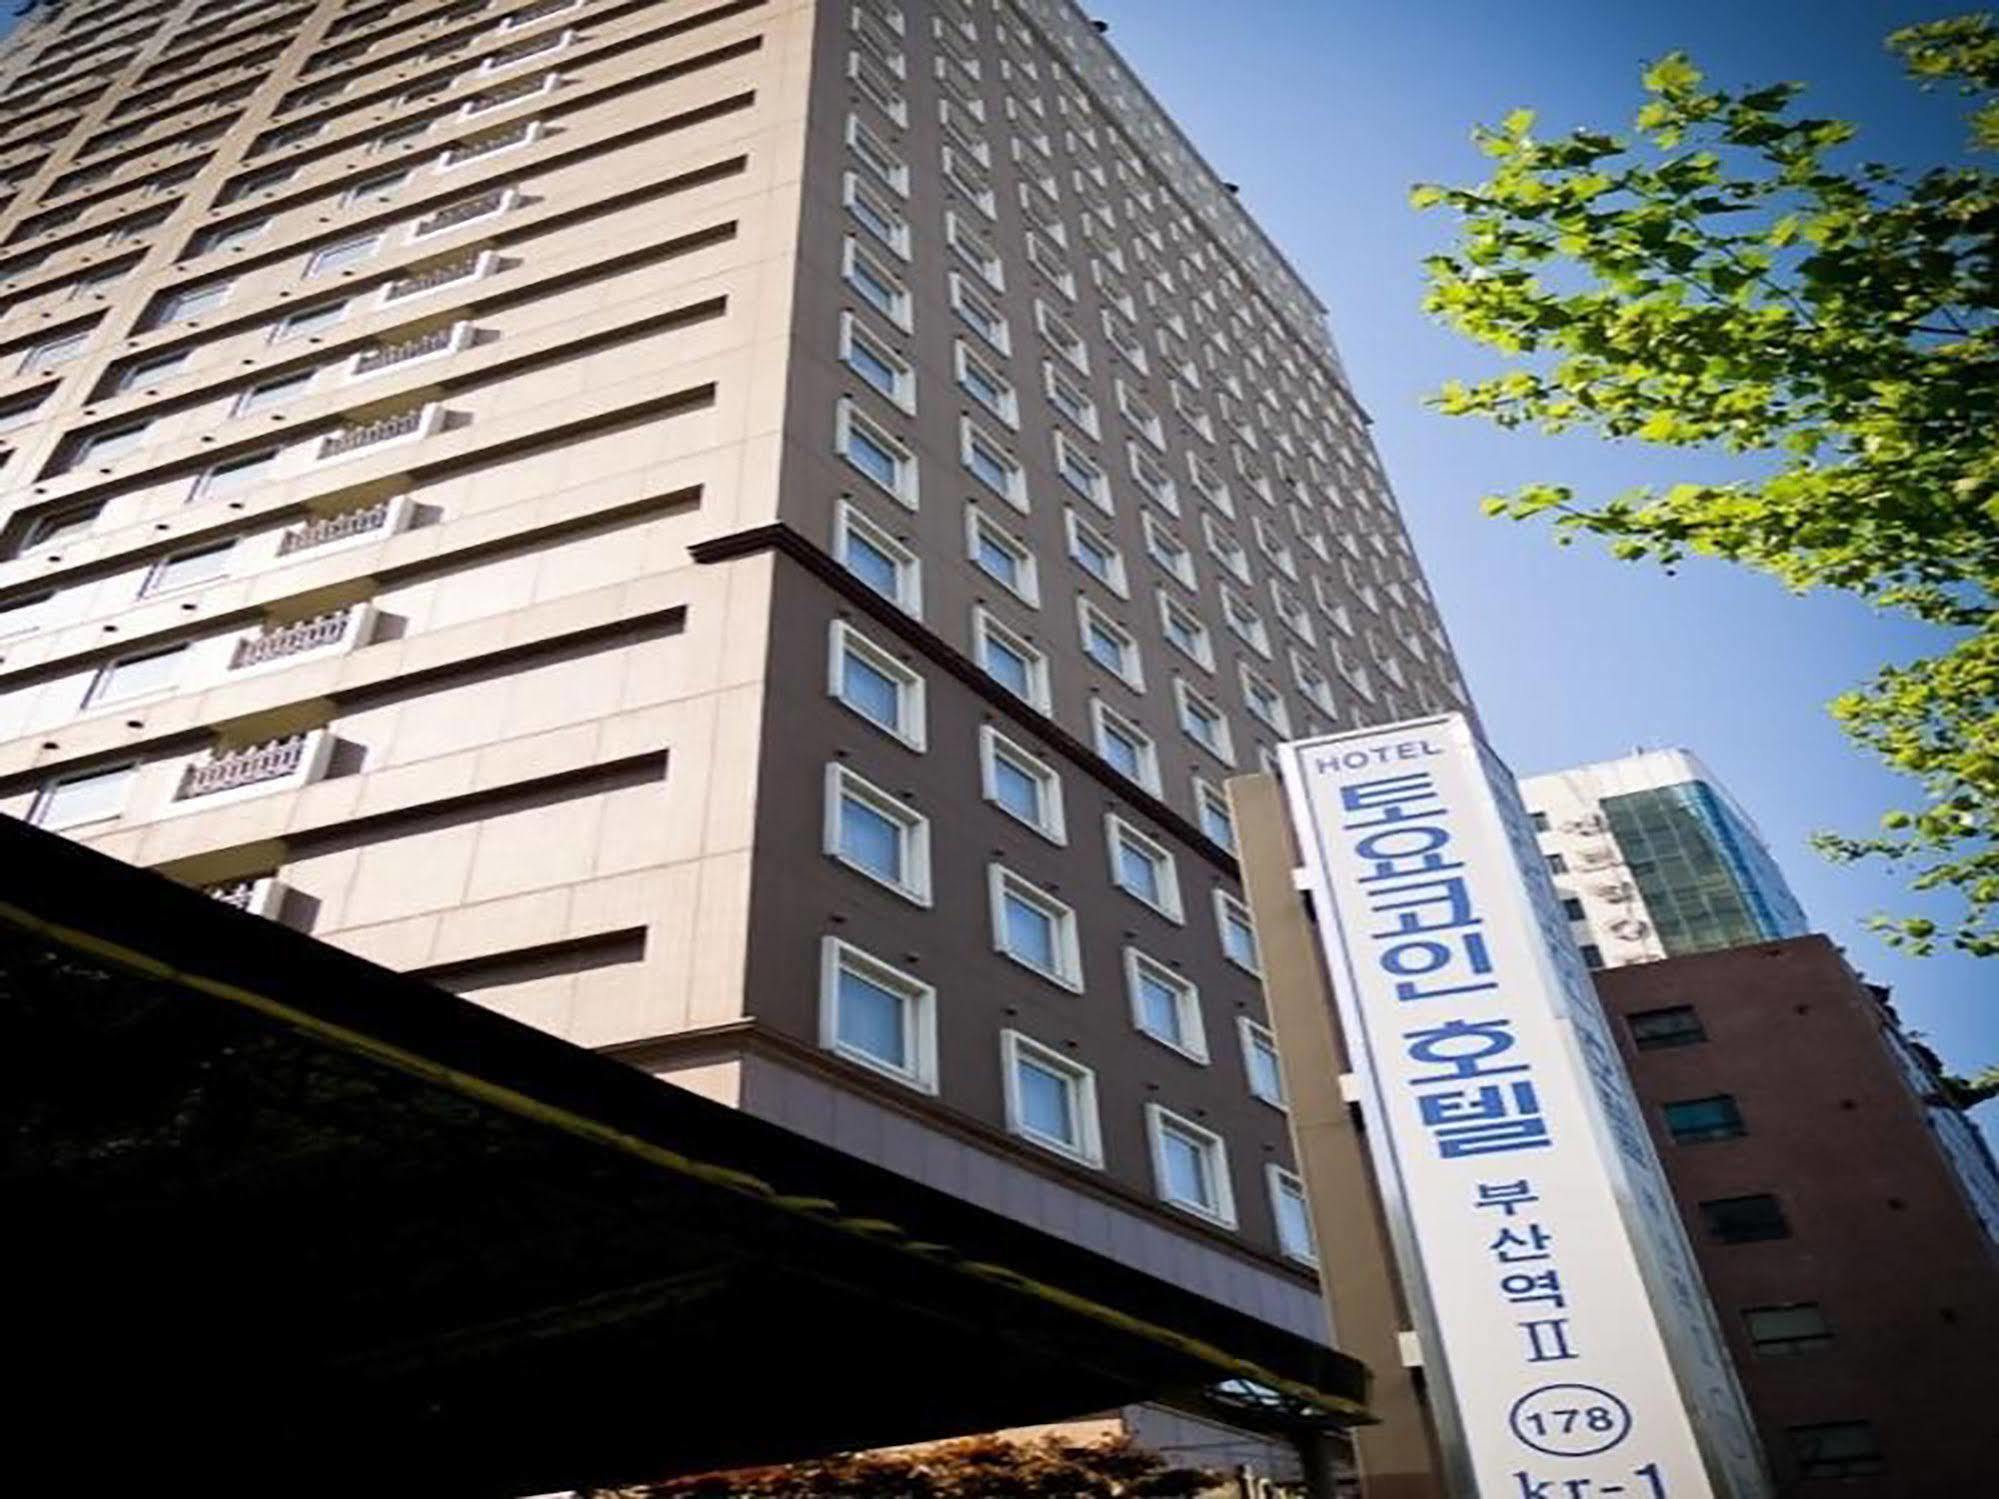 Toyoko-Inn Busan Jungang Station Exterior photo